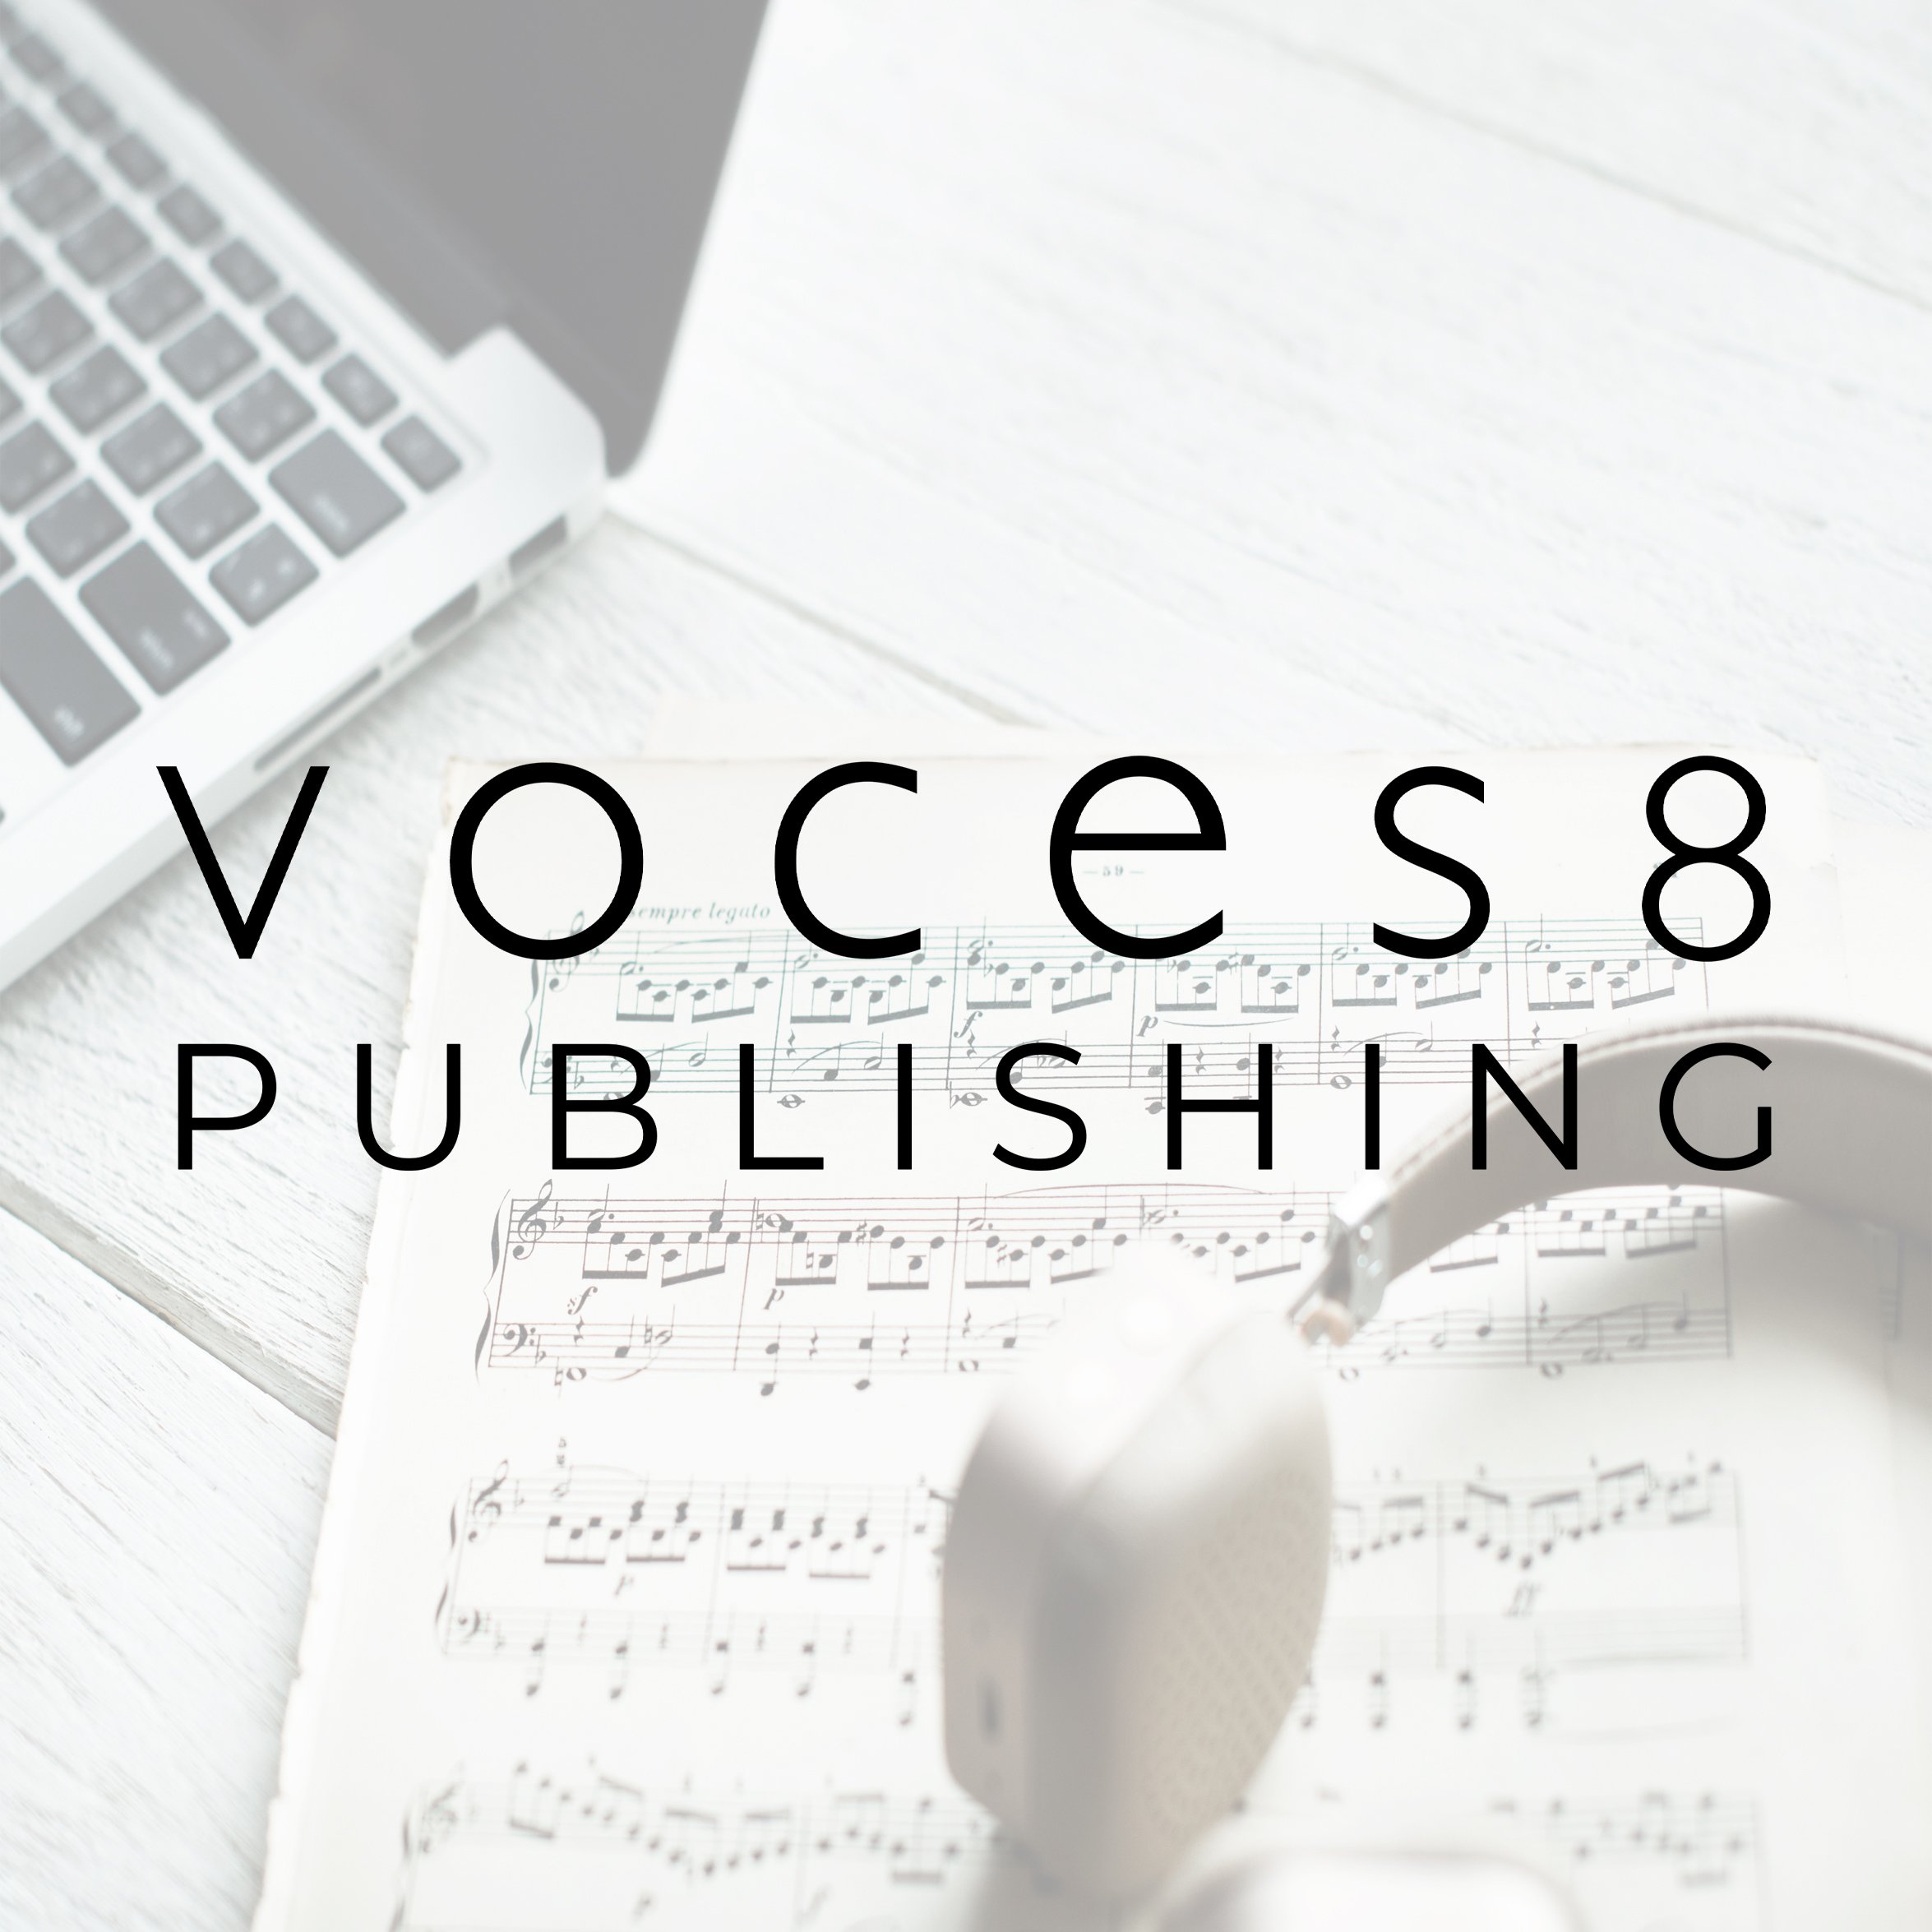 VOCES8 Publishing